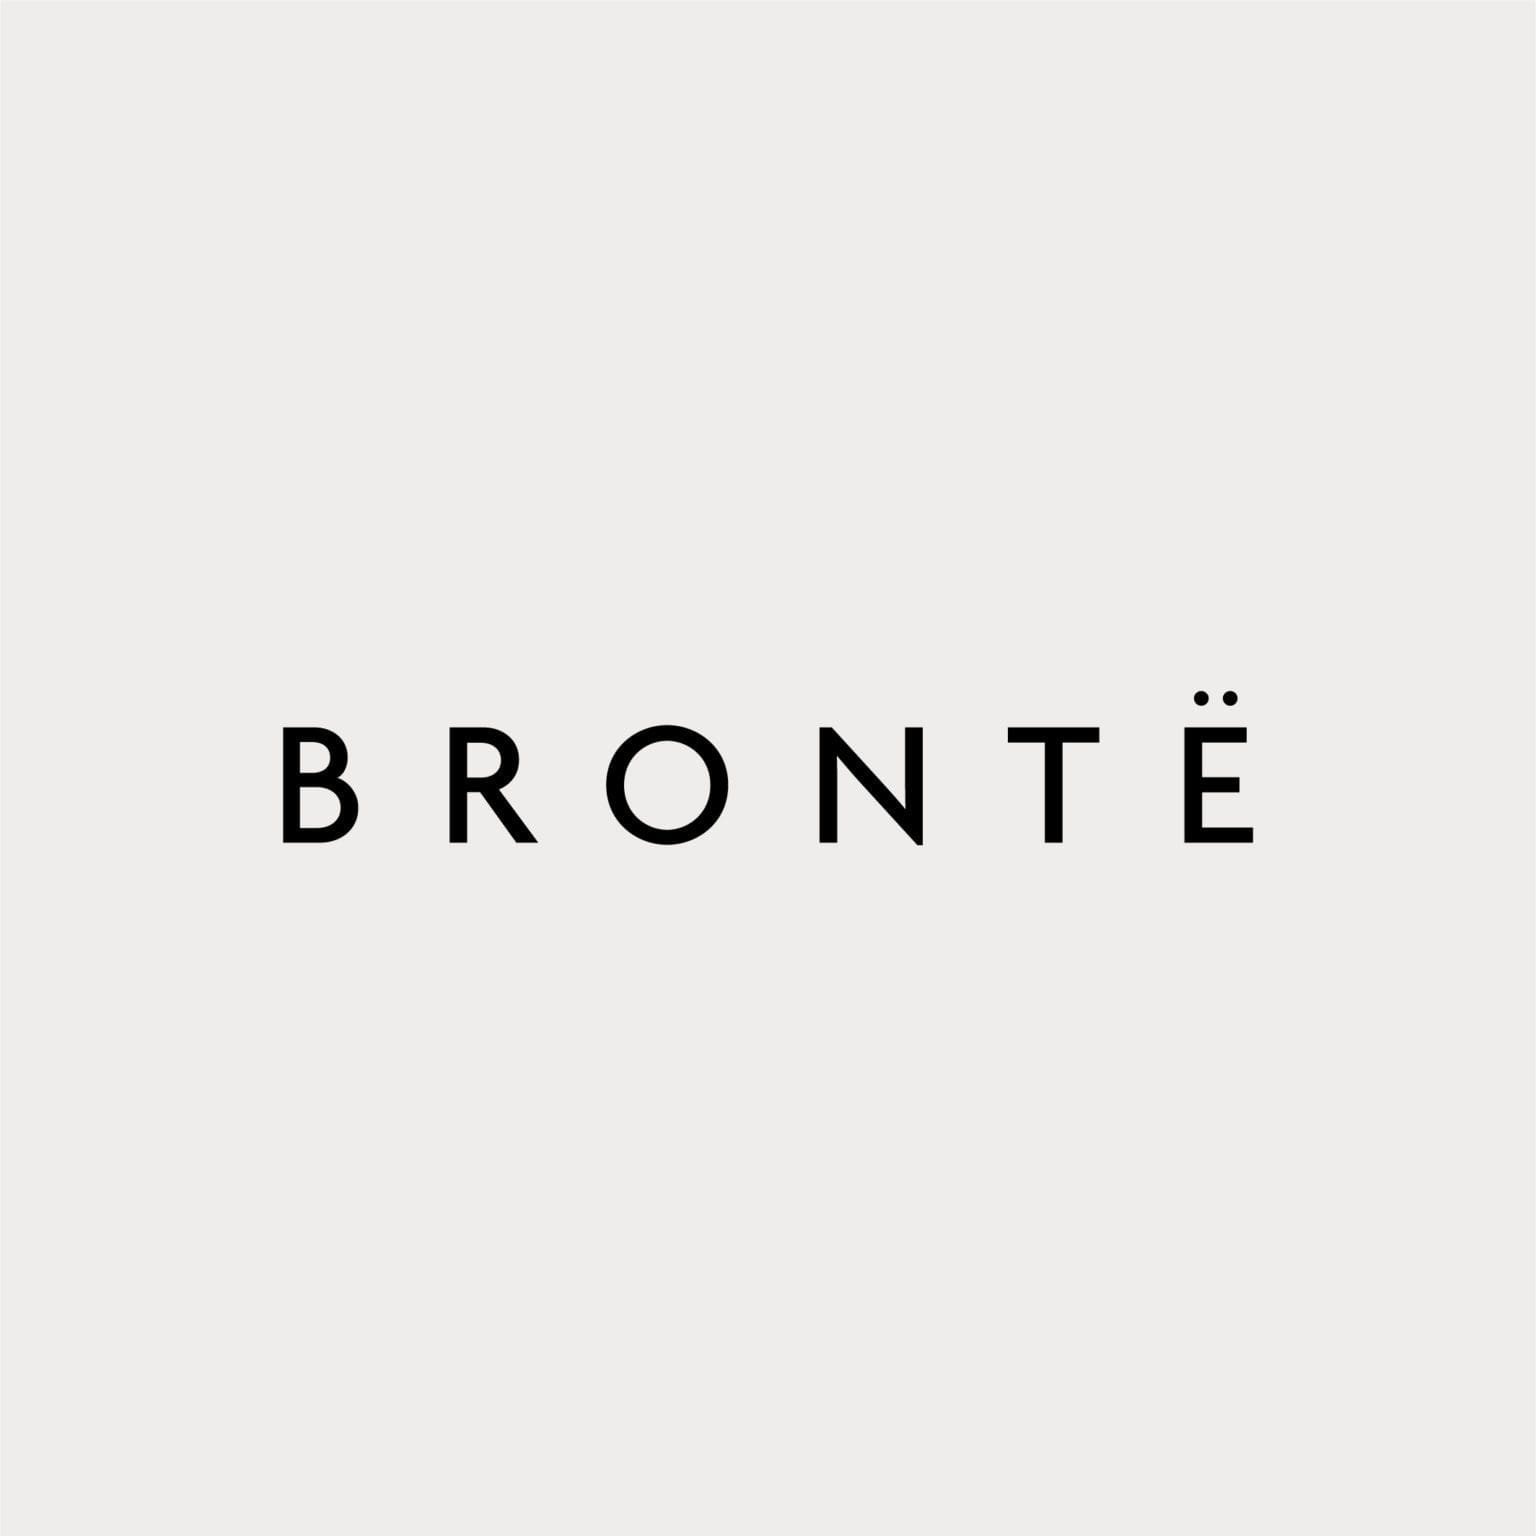 Brontë Group